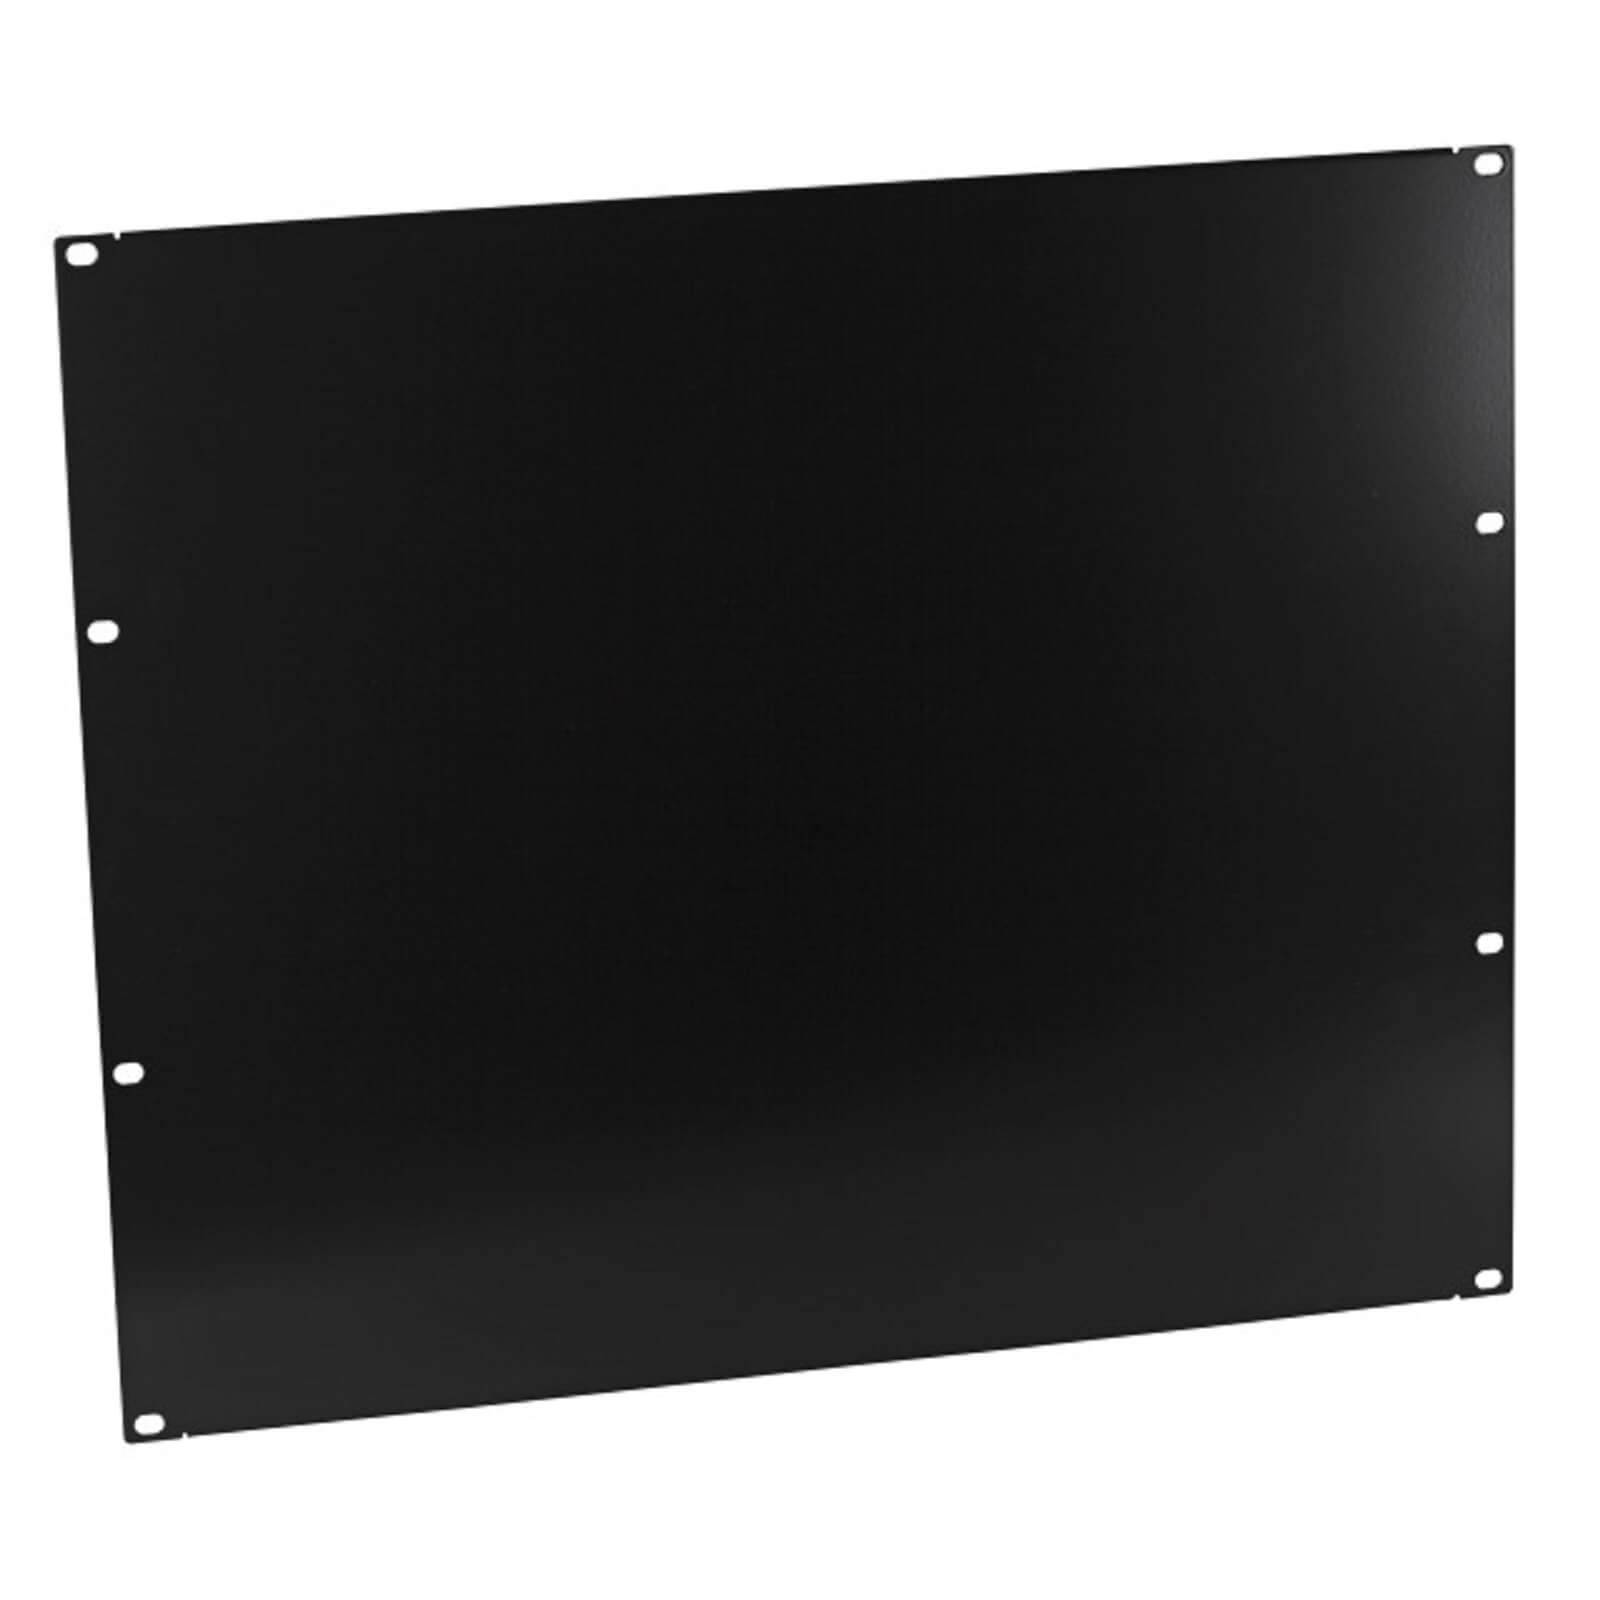 2 HE U Rackblende Frontplatte Rackpanel Blende Rack Panel 19" Blindplatte SFX 